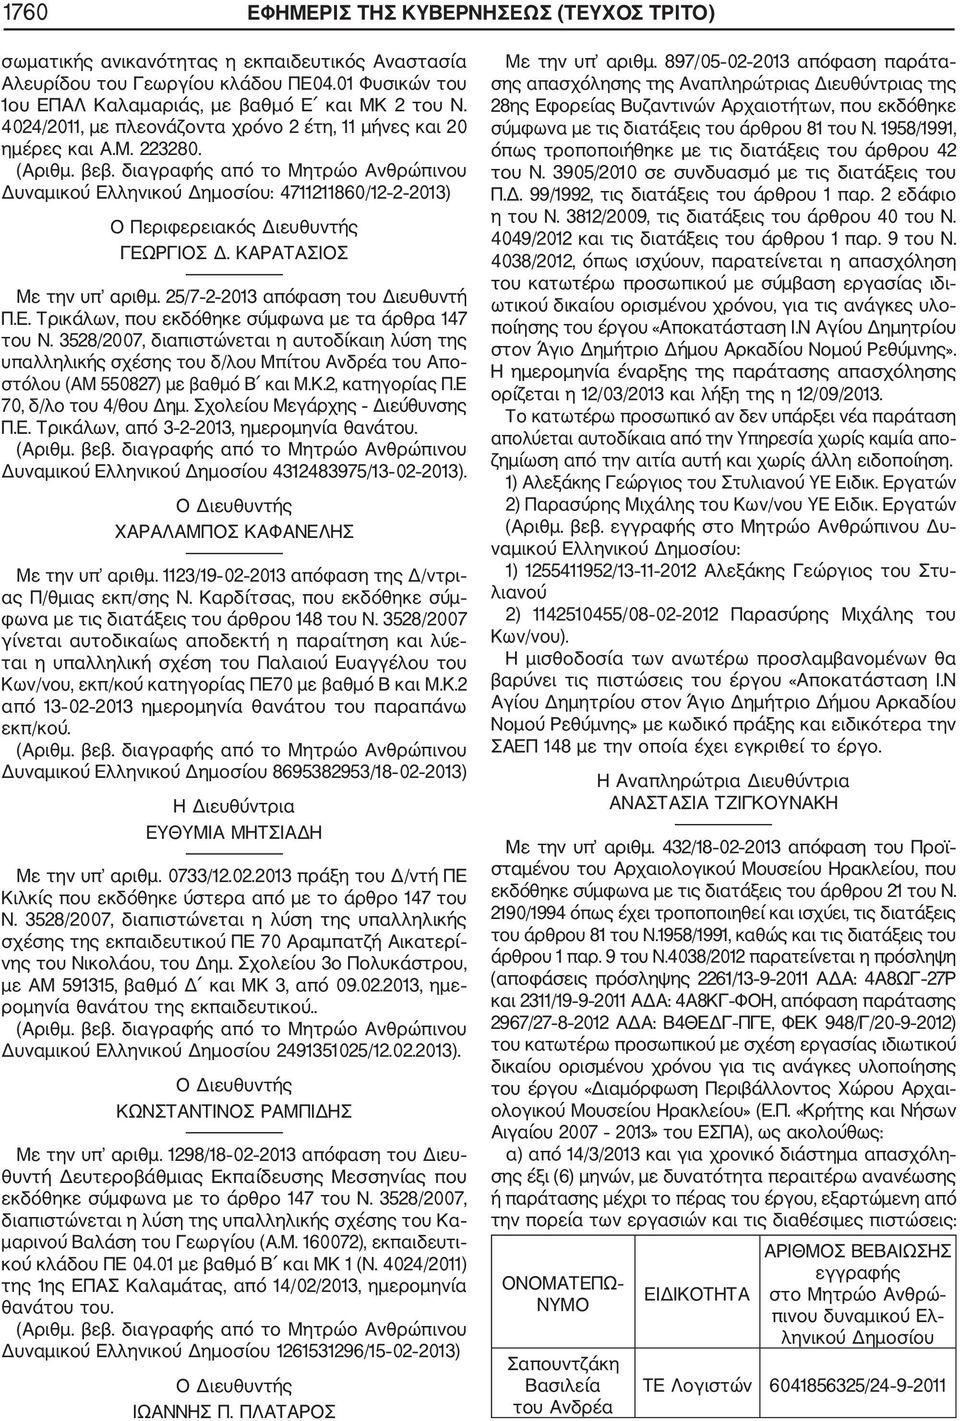 25/7 2 2013 απόφαση του Διευθυντή Π.Ε. Τρικάλων, που εκδόθηκε σύμφωνα με τα άρθρα 147 του Ν.